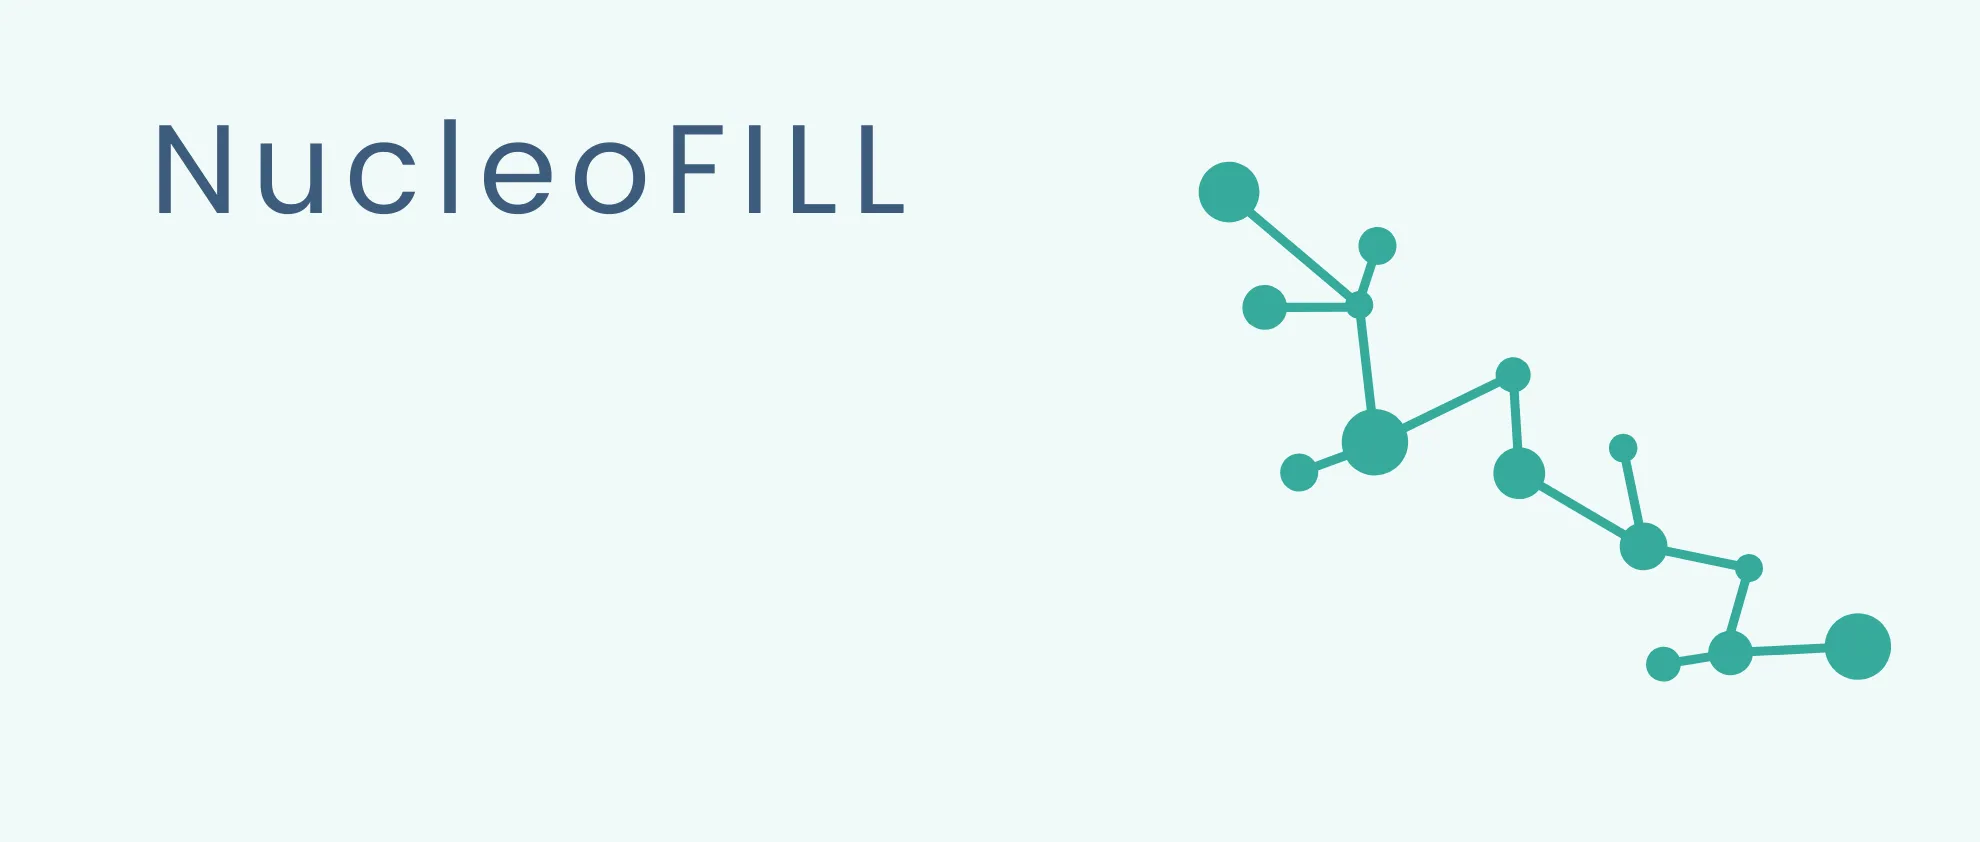 NucleoFILL zabieg – Stymulator tkankowy – najważniejsze informacje